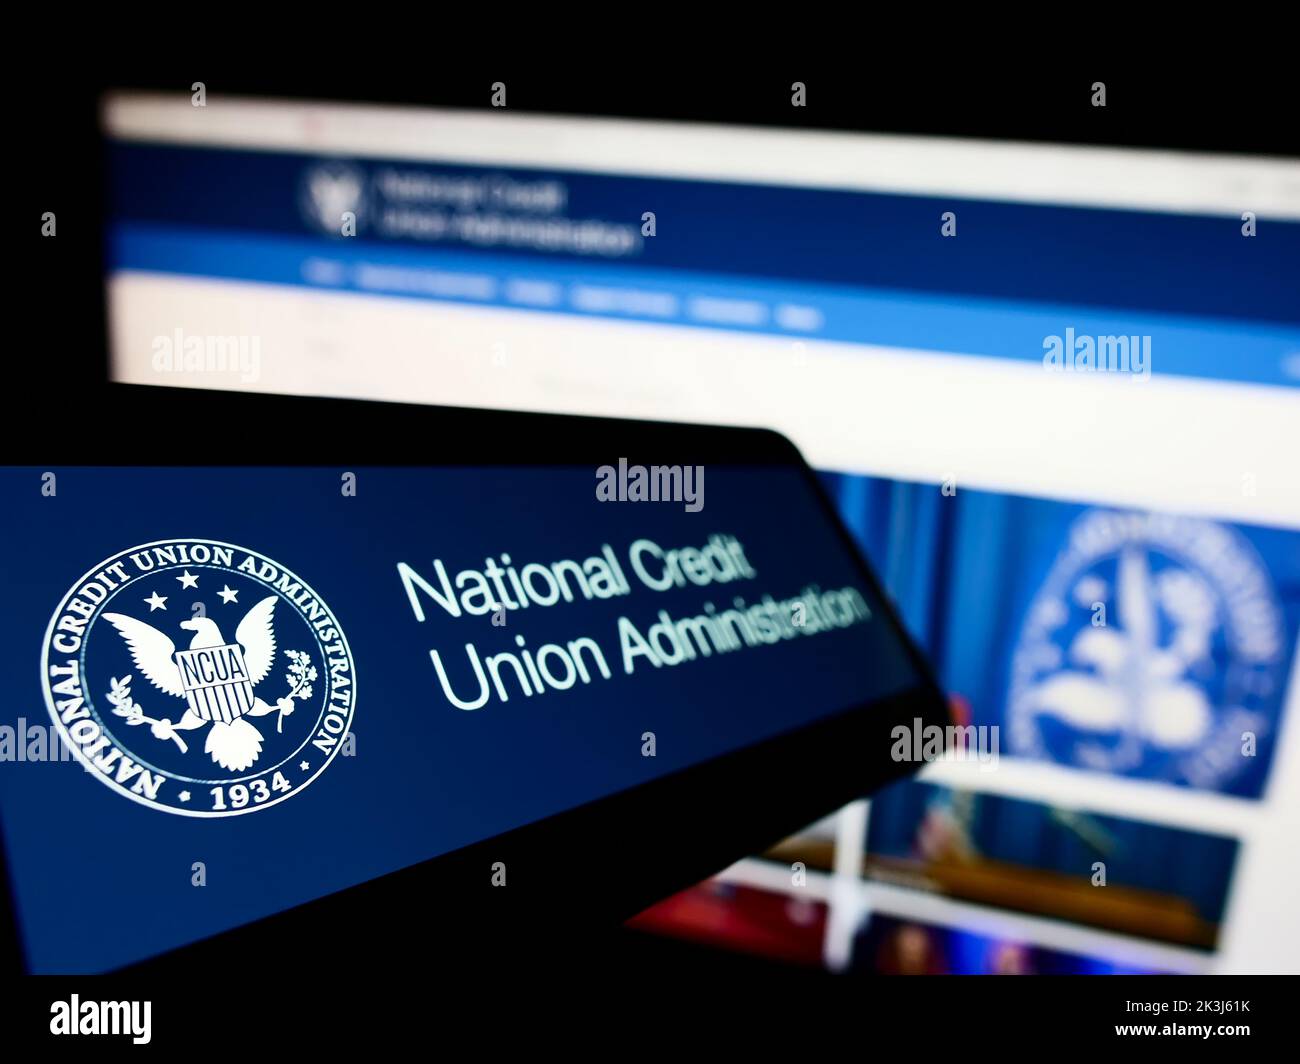 Teléfono celular con el logotipo de la Administración Nacional de Cooperativas de Ahorro y Crédito de los Estados Unidos (NCUA) en la pantalla frente al sitio web. Enfoque en la parte izquierda de la pantalla del teléfono. Foto de stock